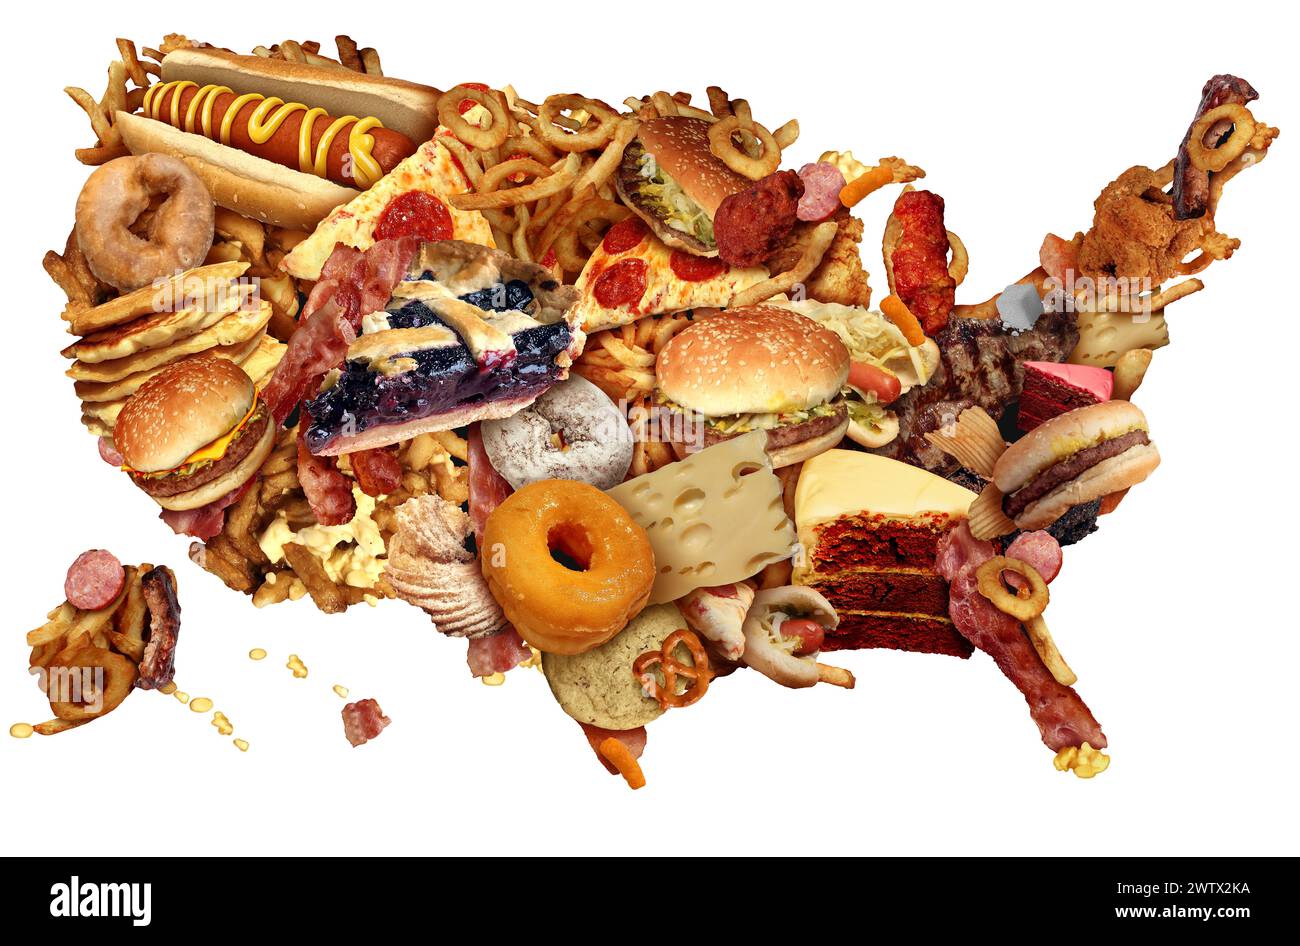 La dieta de comida chatarra ESTADOUNIDENSE como hábitos alimenticios no saludables que representan la obesidad de los Estados Unidos y los hábitos alimenticios de colesterol alto grasoso como un h estadounidense Foto de stock